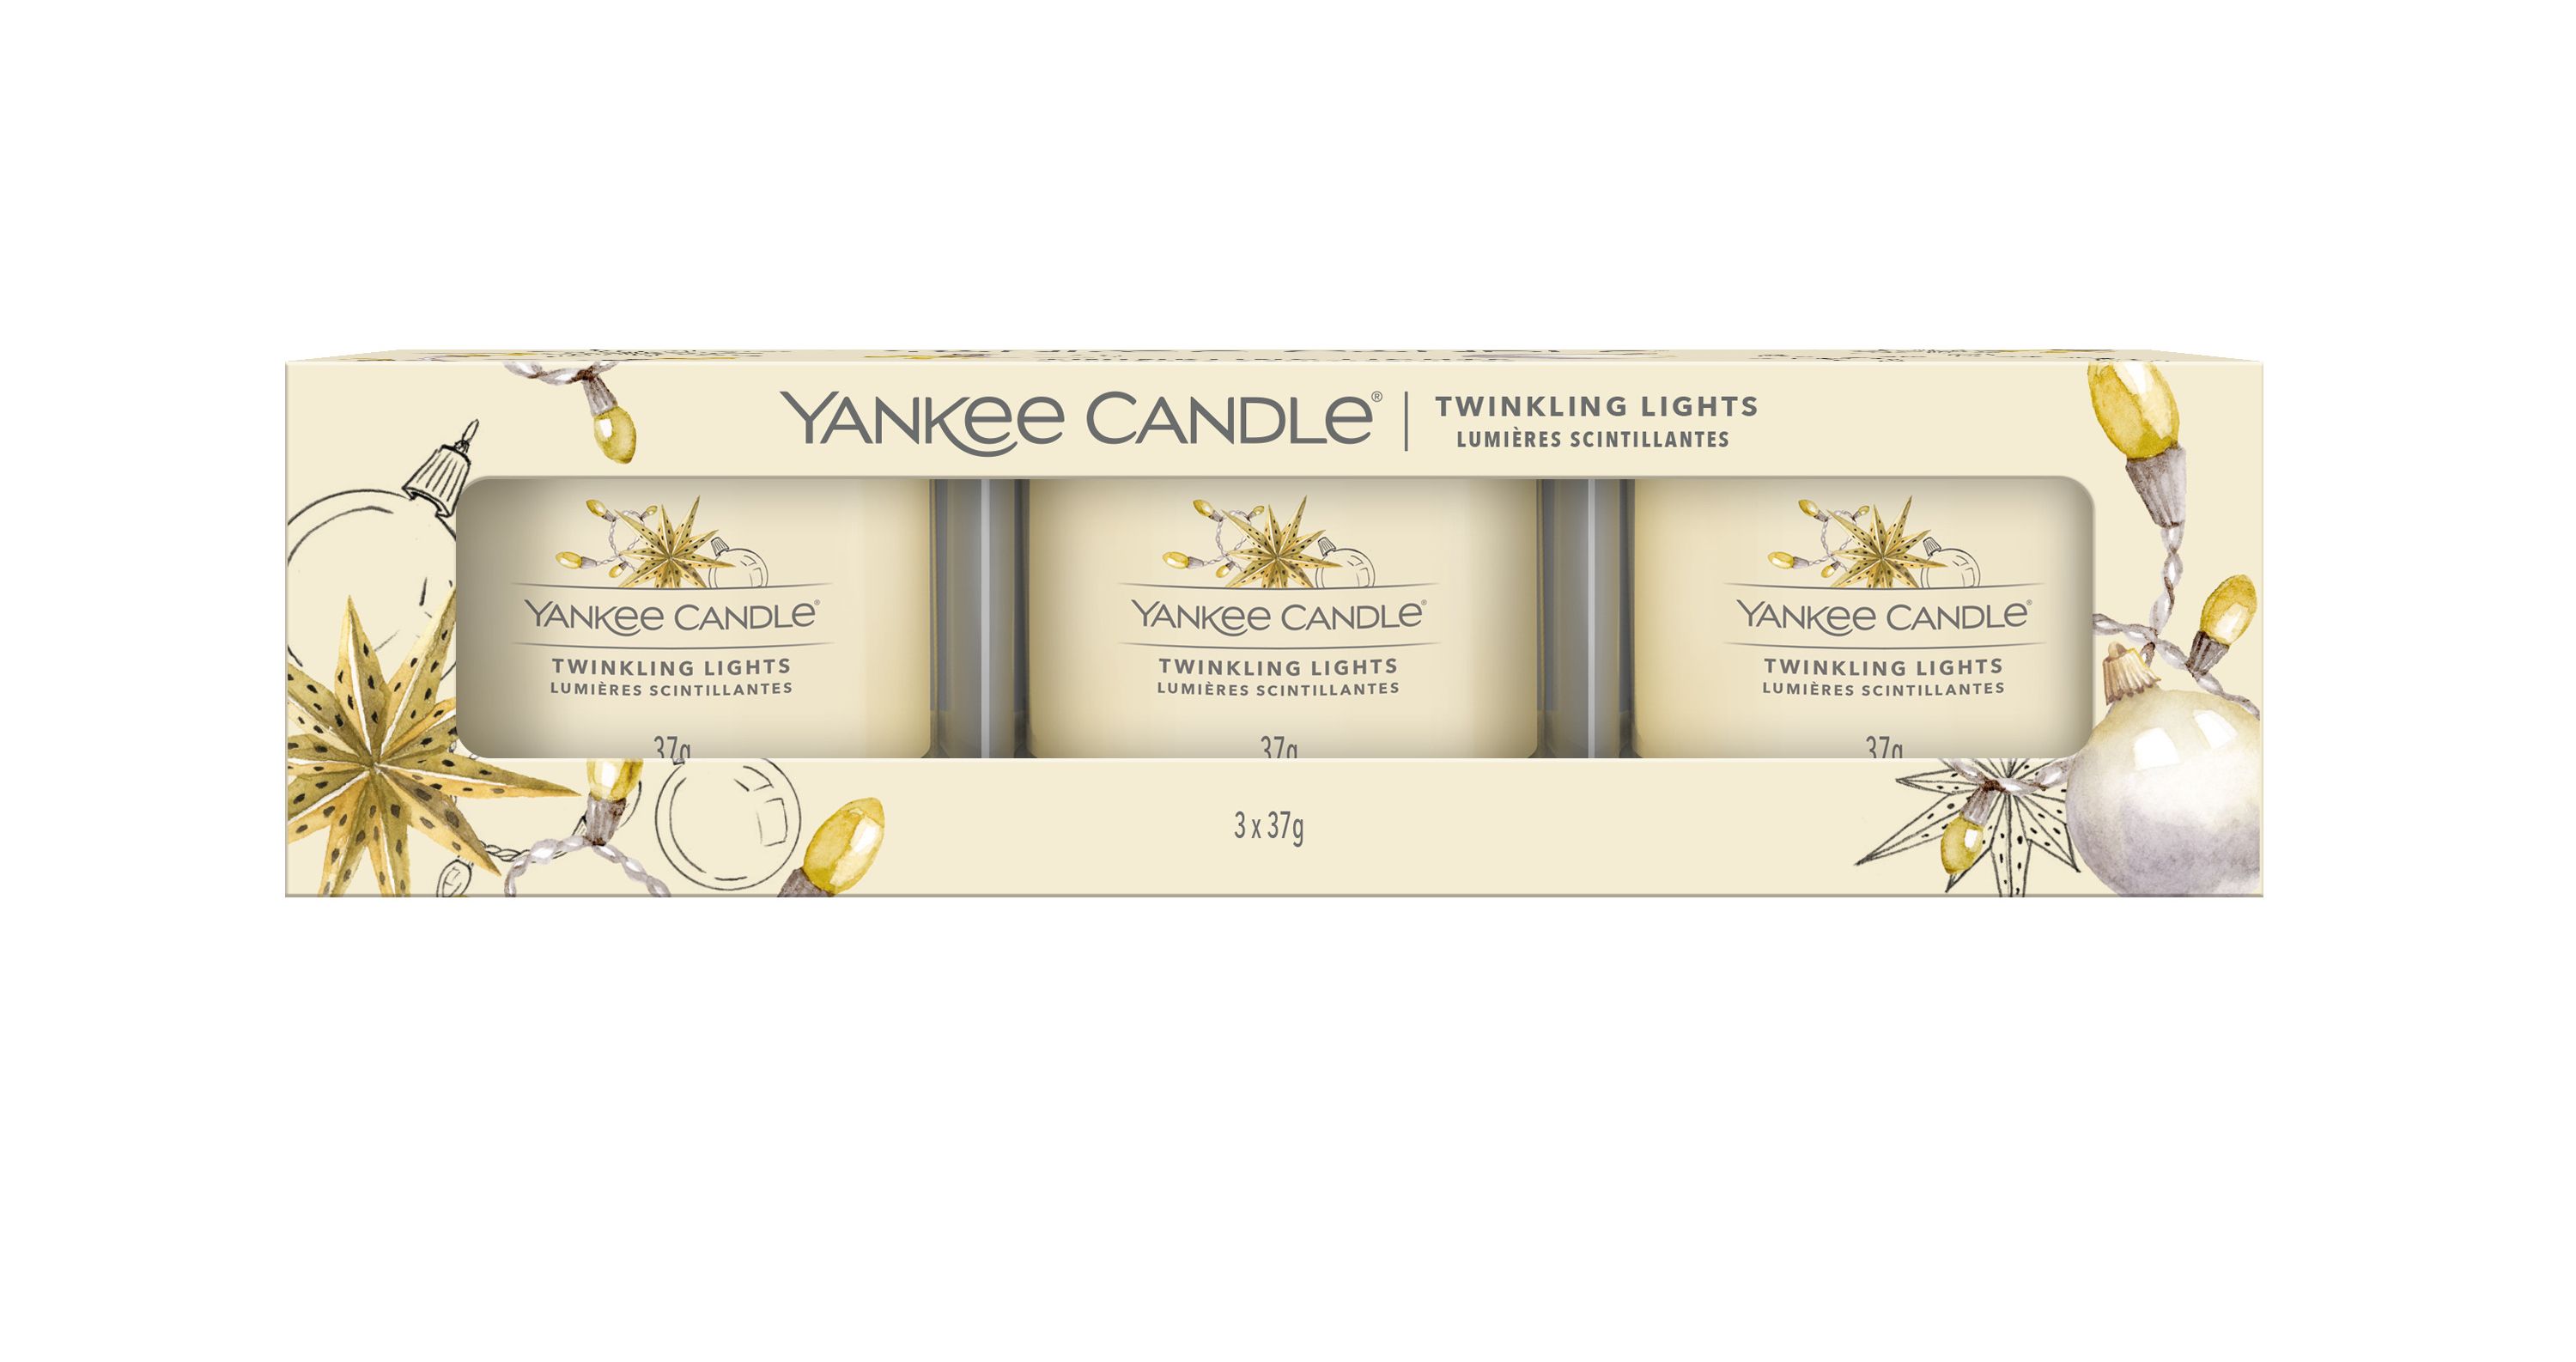 Yankee Candle Geschenkset Twinkling Lights - 3 Stück kaufen? Bei